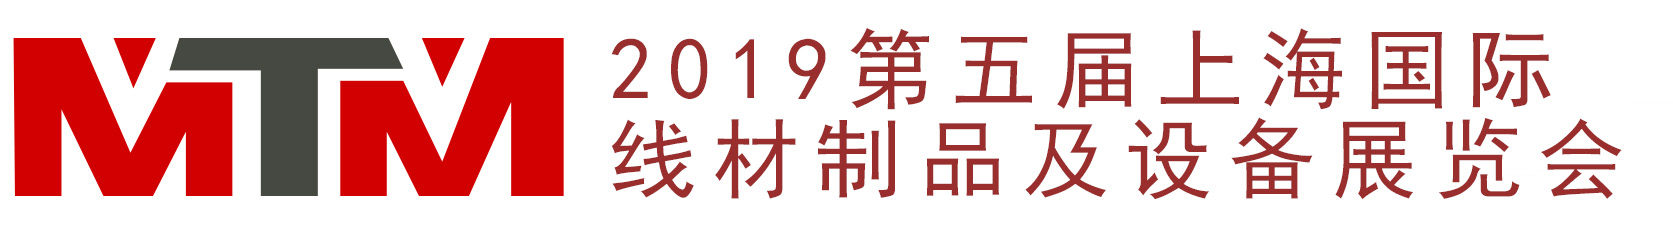 2019第五屆上海國際線材制品及設備展覽會